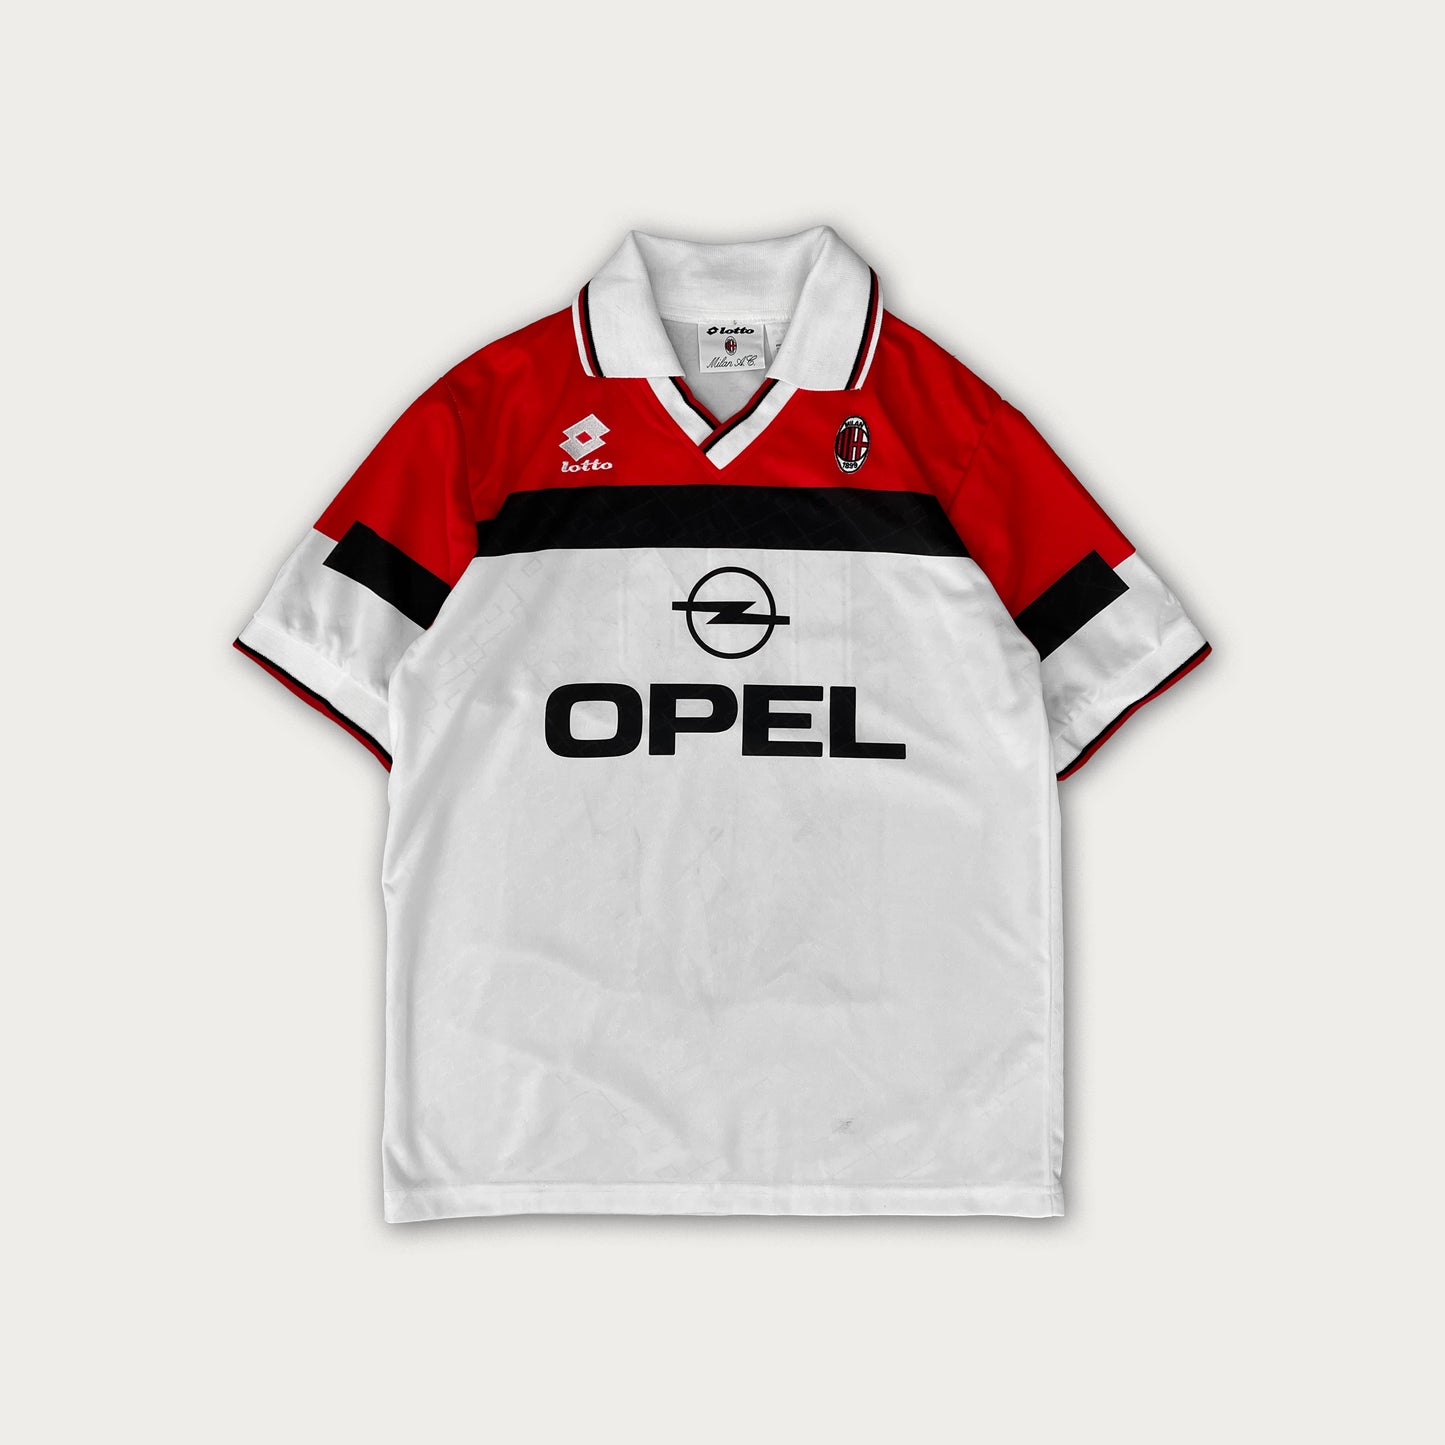 1995/96 AC Milan Youth Team